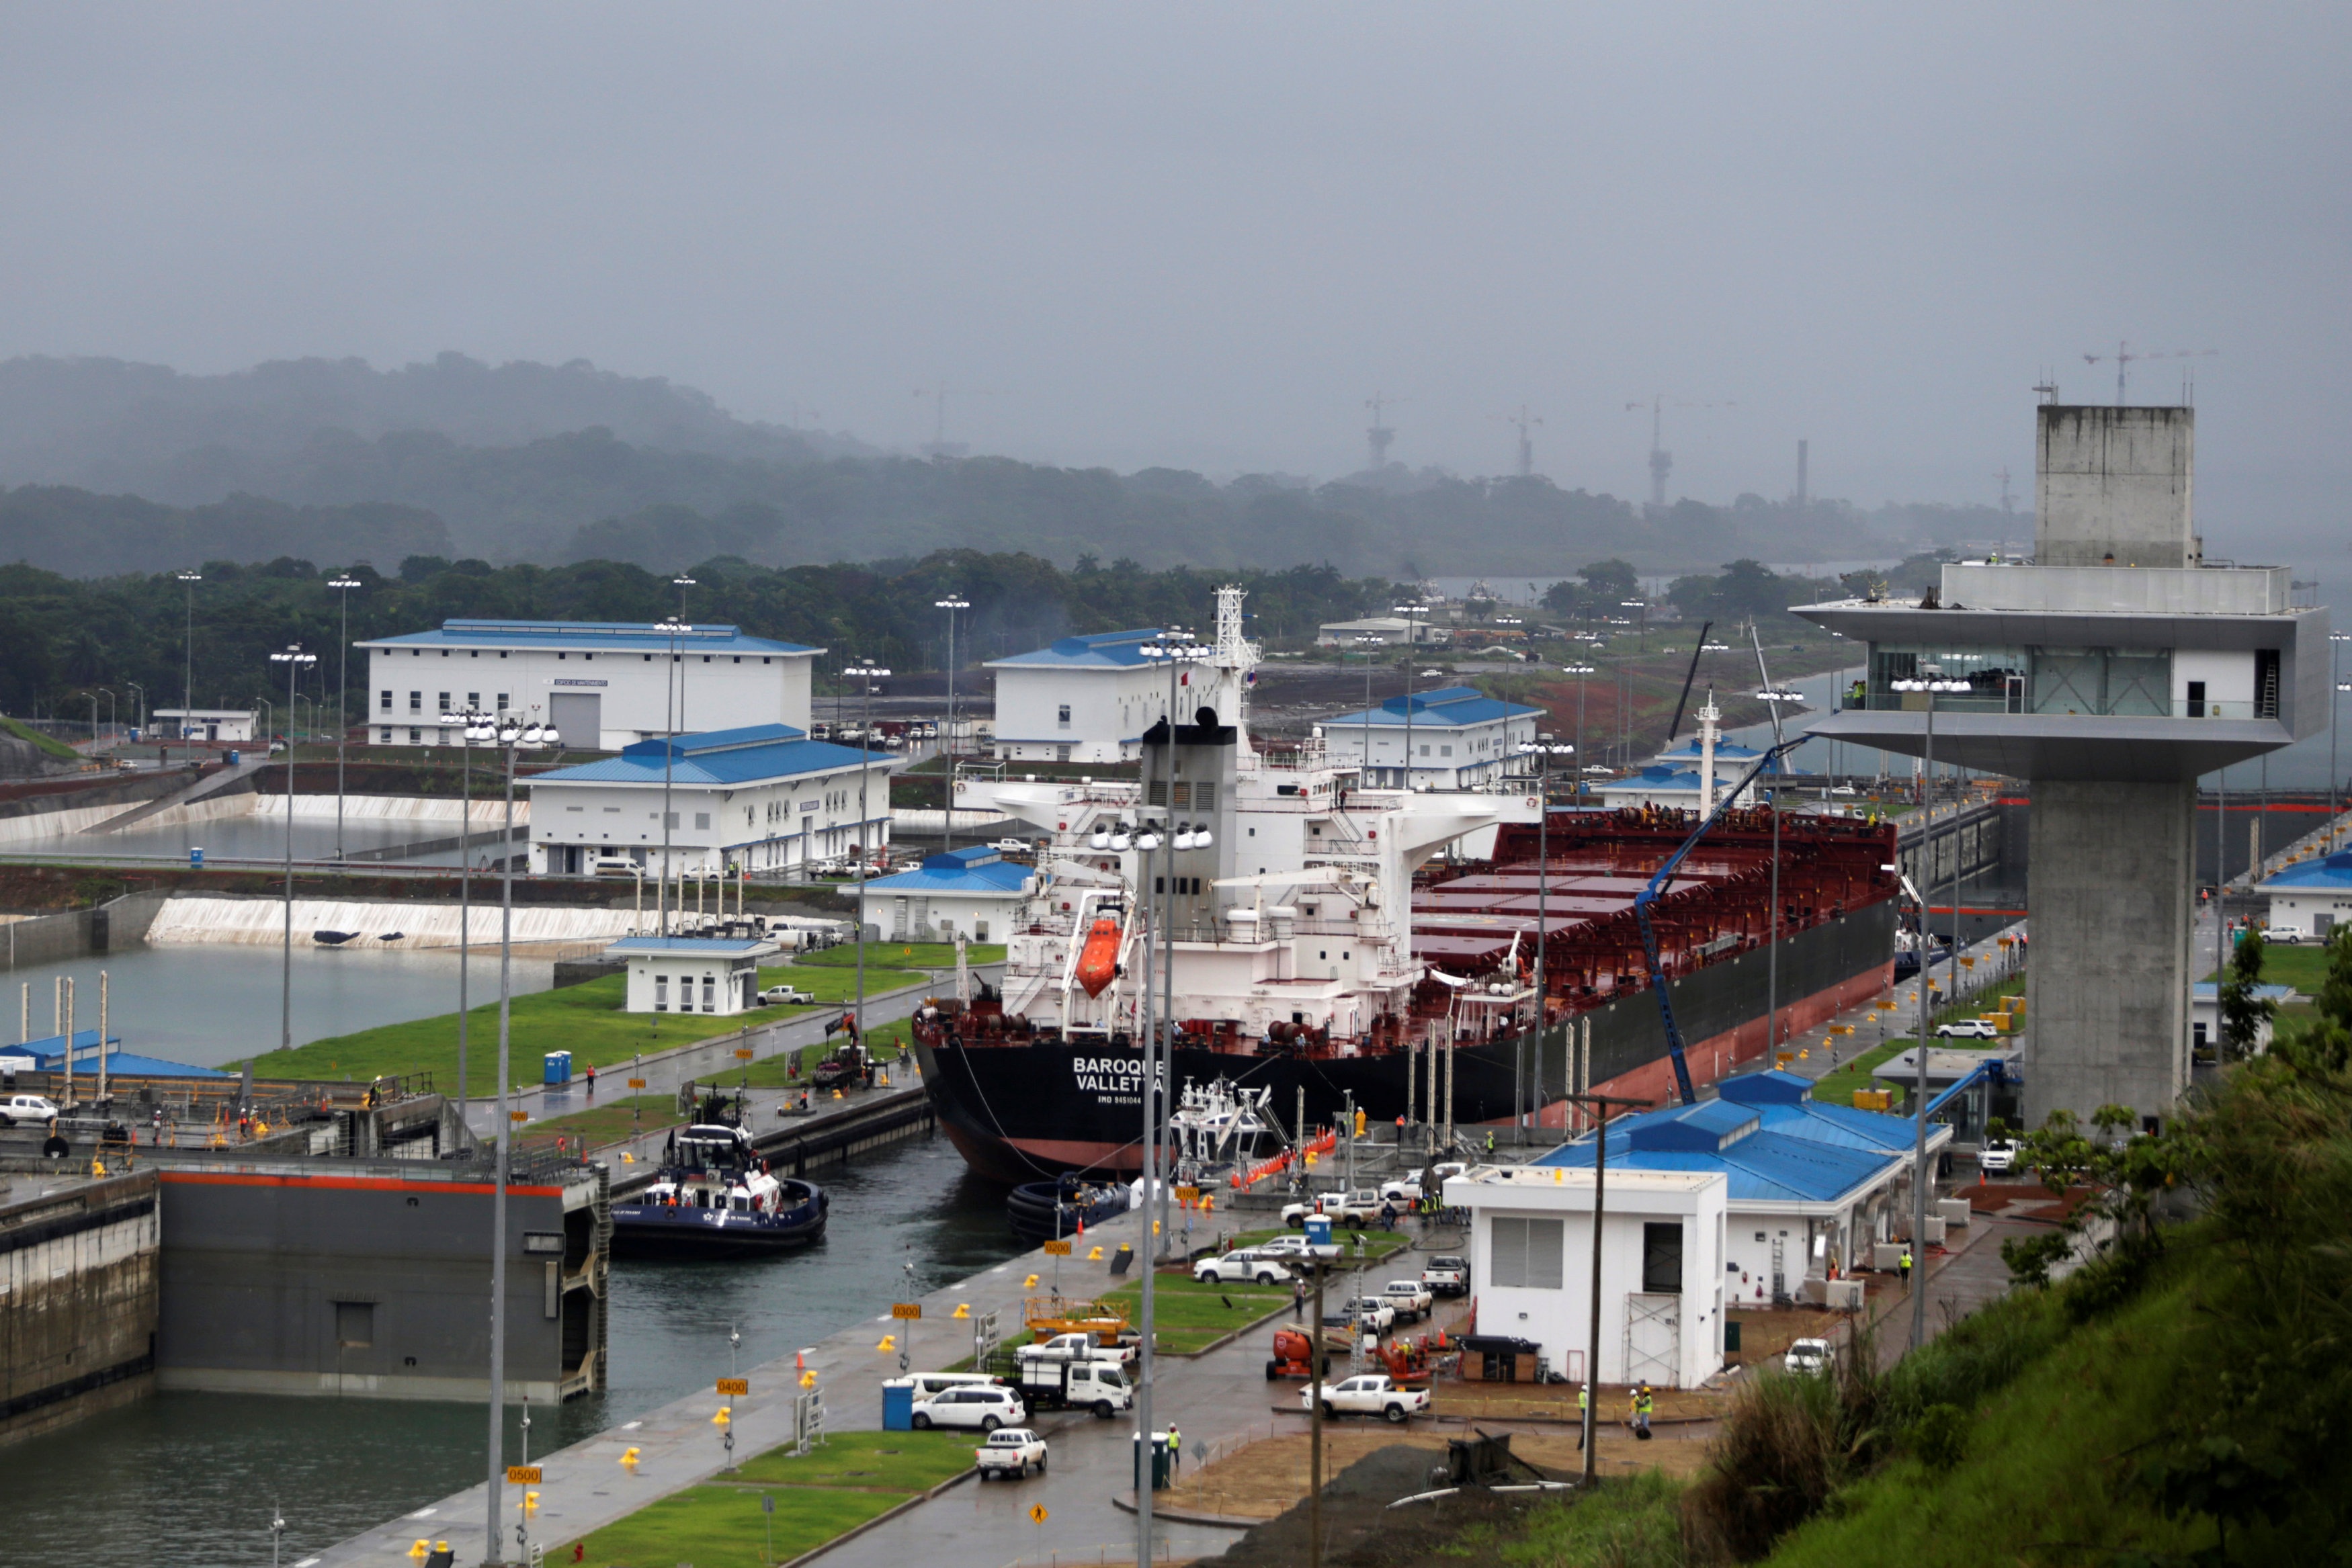 Mục tiêu của dự án là nhằm tăng gấp đôi công suất lưu lượng tàu bè qua lại để phục vụ cho các tuyến giao thương trên toàn thế giới. Ước tính, sau khi được mở rộng, công suất trung chuyển qua kênh đào Panama sẽ được tăng lên 600 triệu tấn hàng hóa mỗi năm, tương đương 12% khối lượng hàng hóa thương mại thế giới (Ảnh: Reuters)